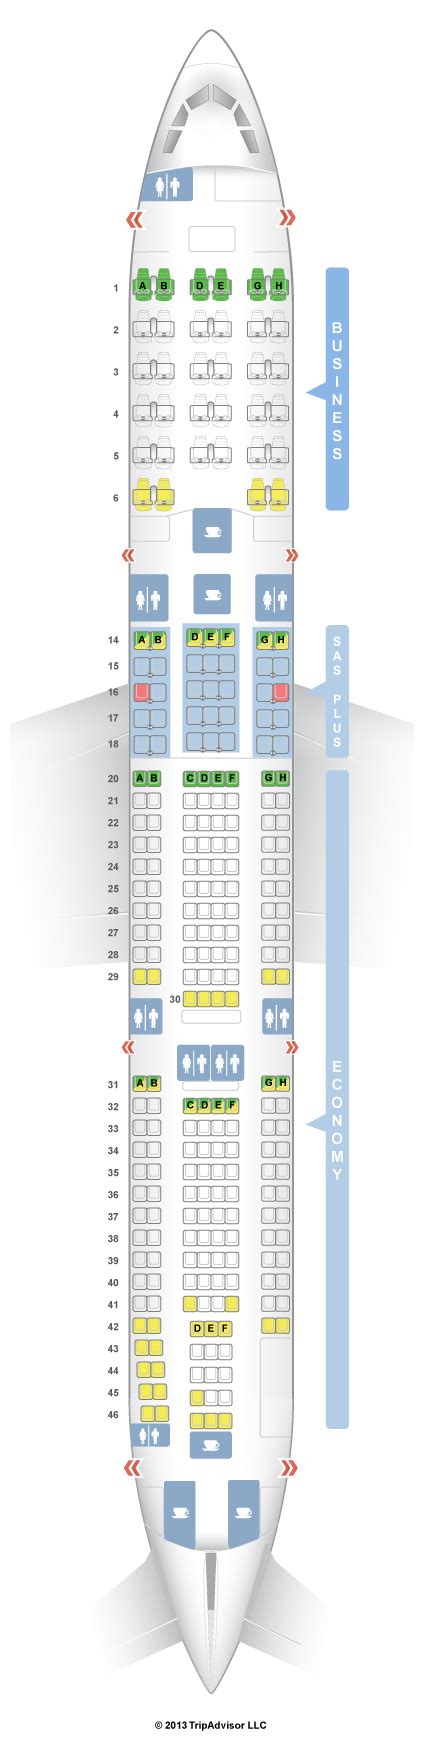 Seatguru Seat Map Sas